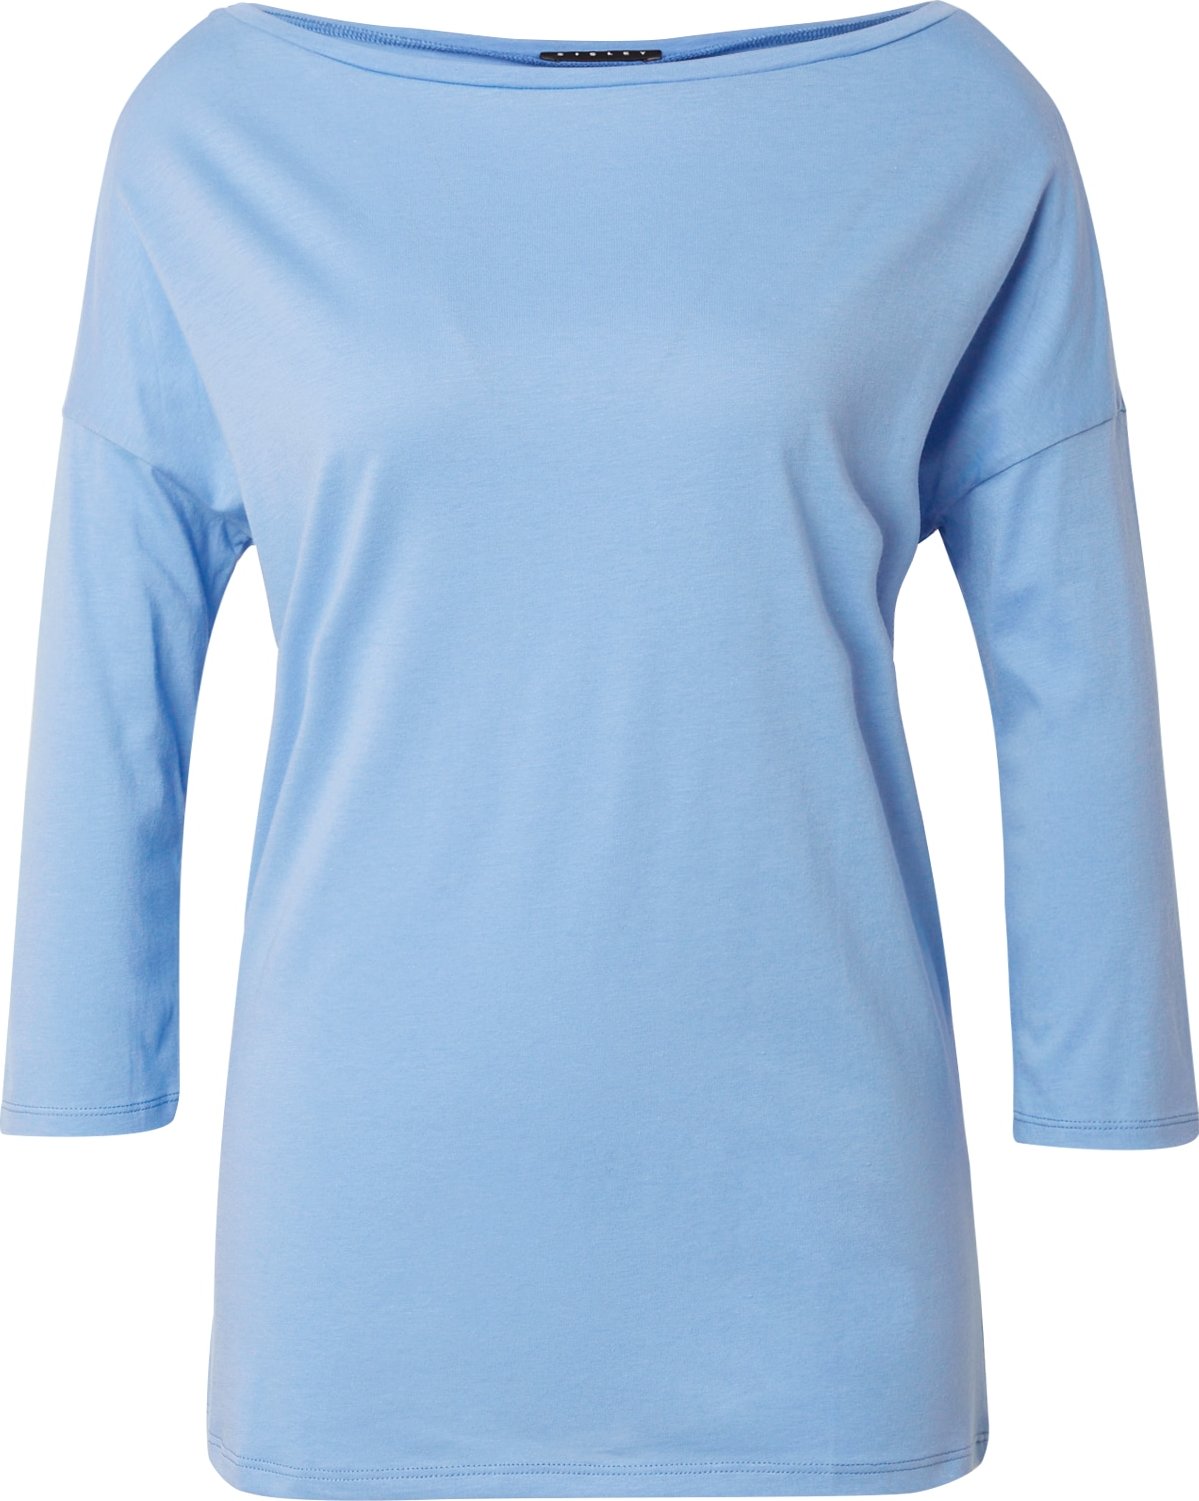 Tričko Sisley nebeská modř